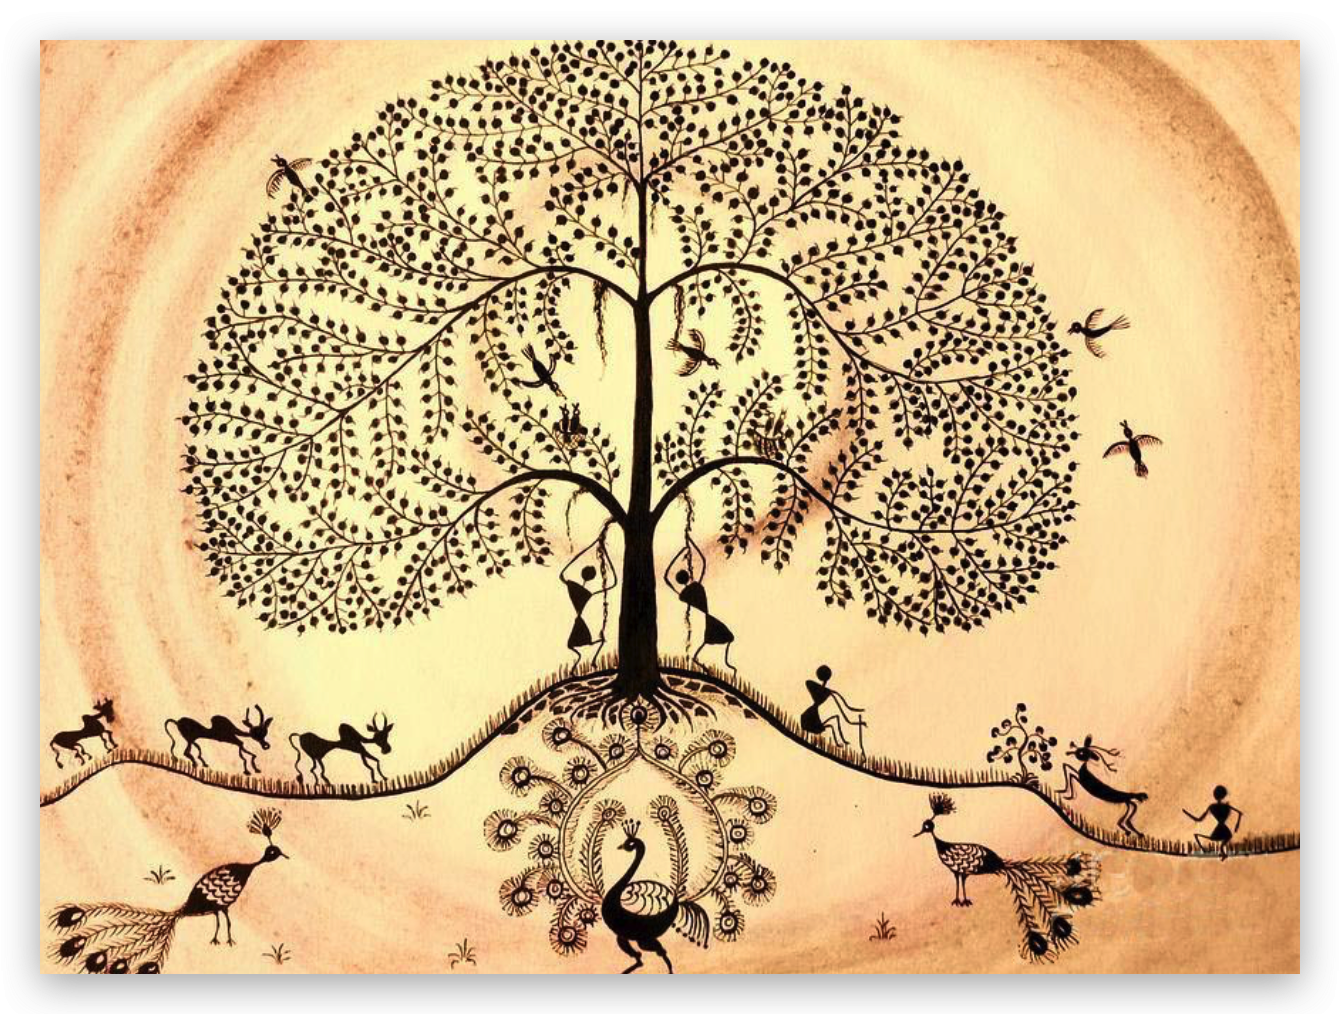 Дерево фусан китайская мифология. Мировое Древо Китая дерево фусан. Китайское Древо жизни Киен-му. Мировое Древо фусан картина. Символическая культура природы